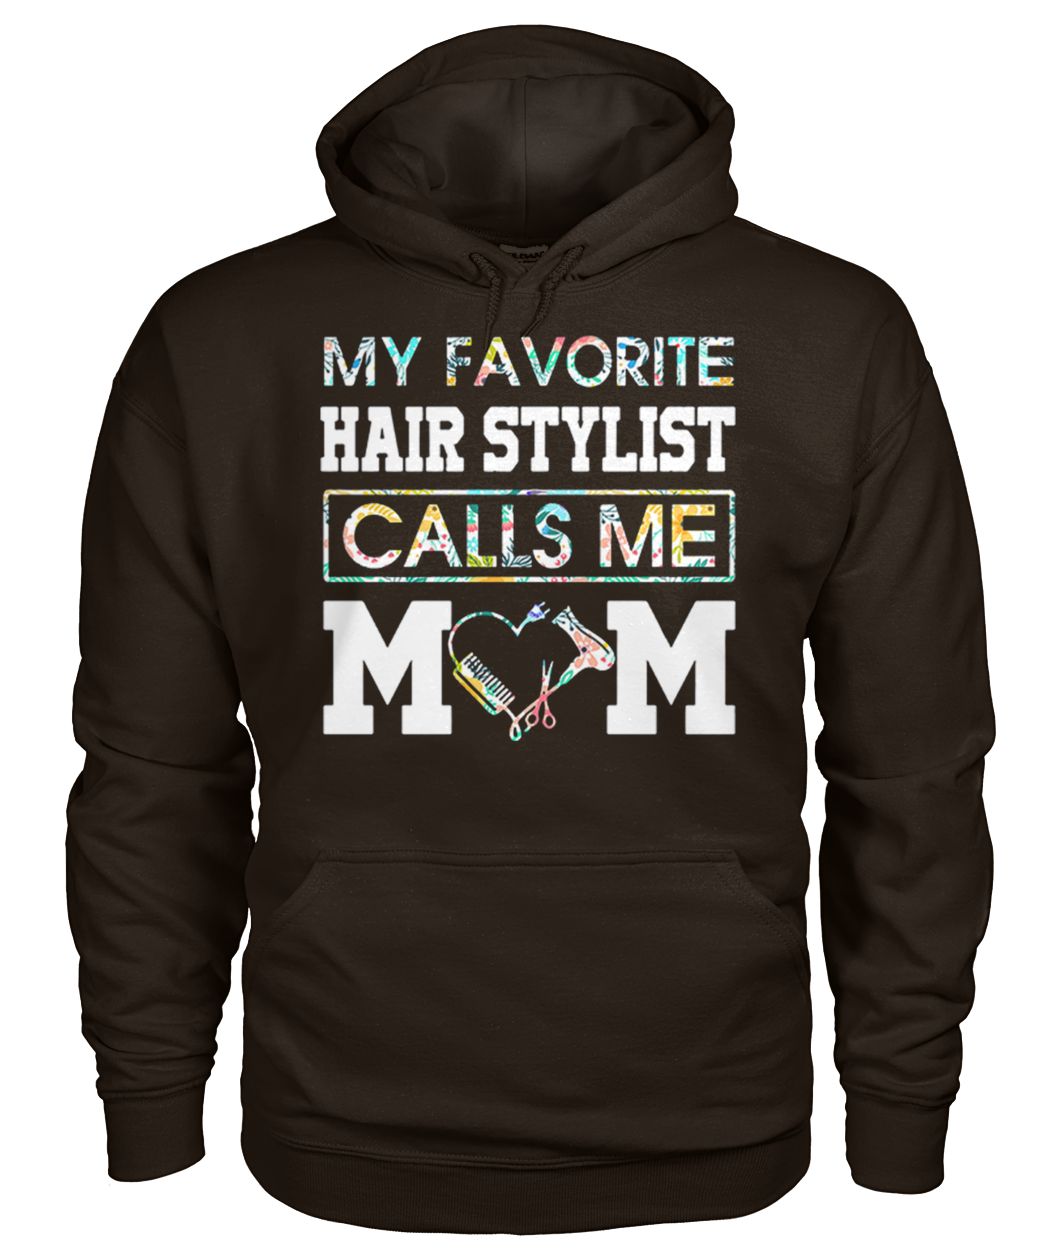 My favorite hair stylist calls me mom gildan hoodie